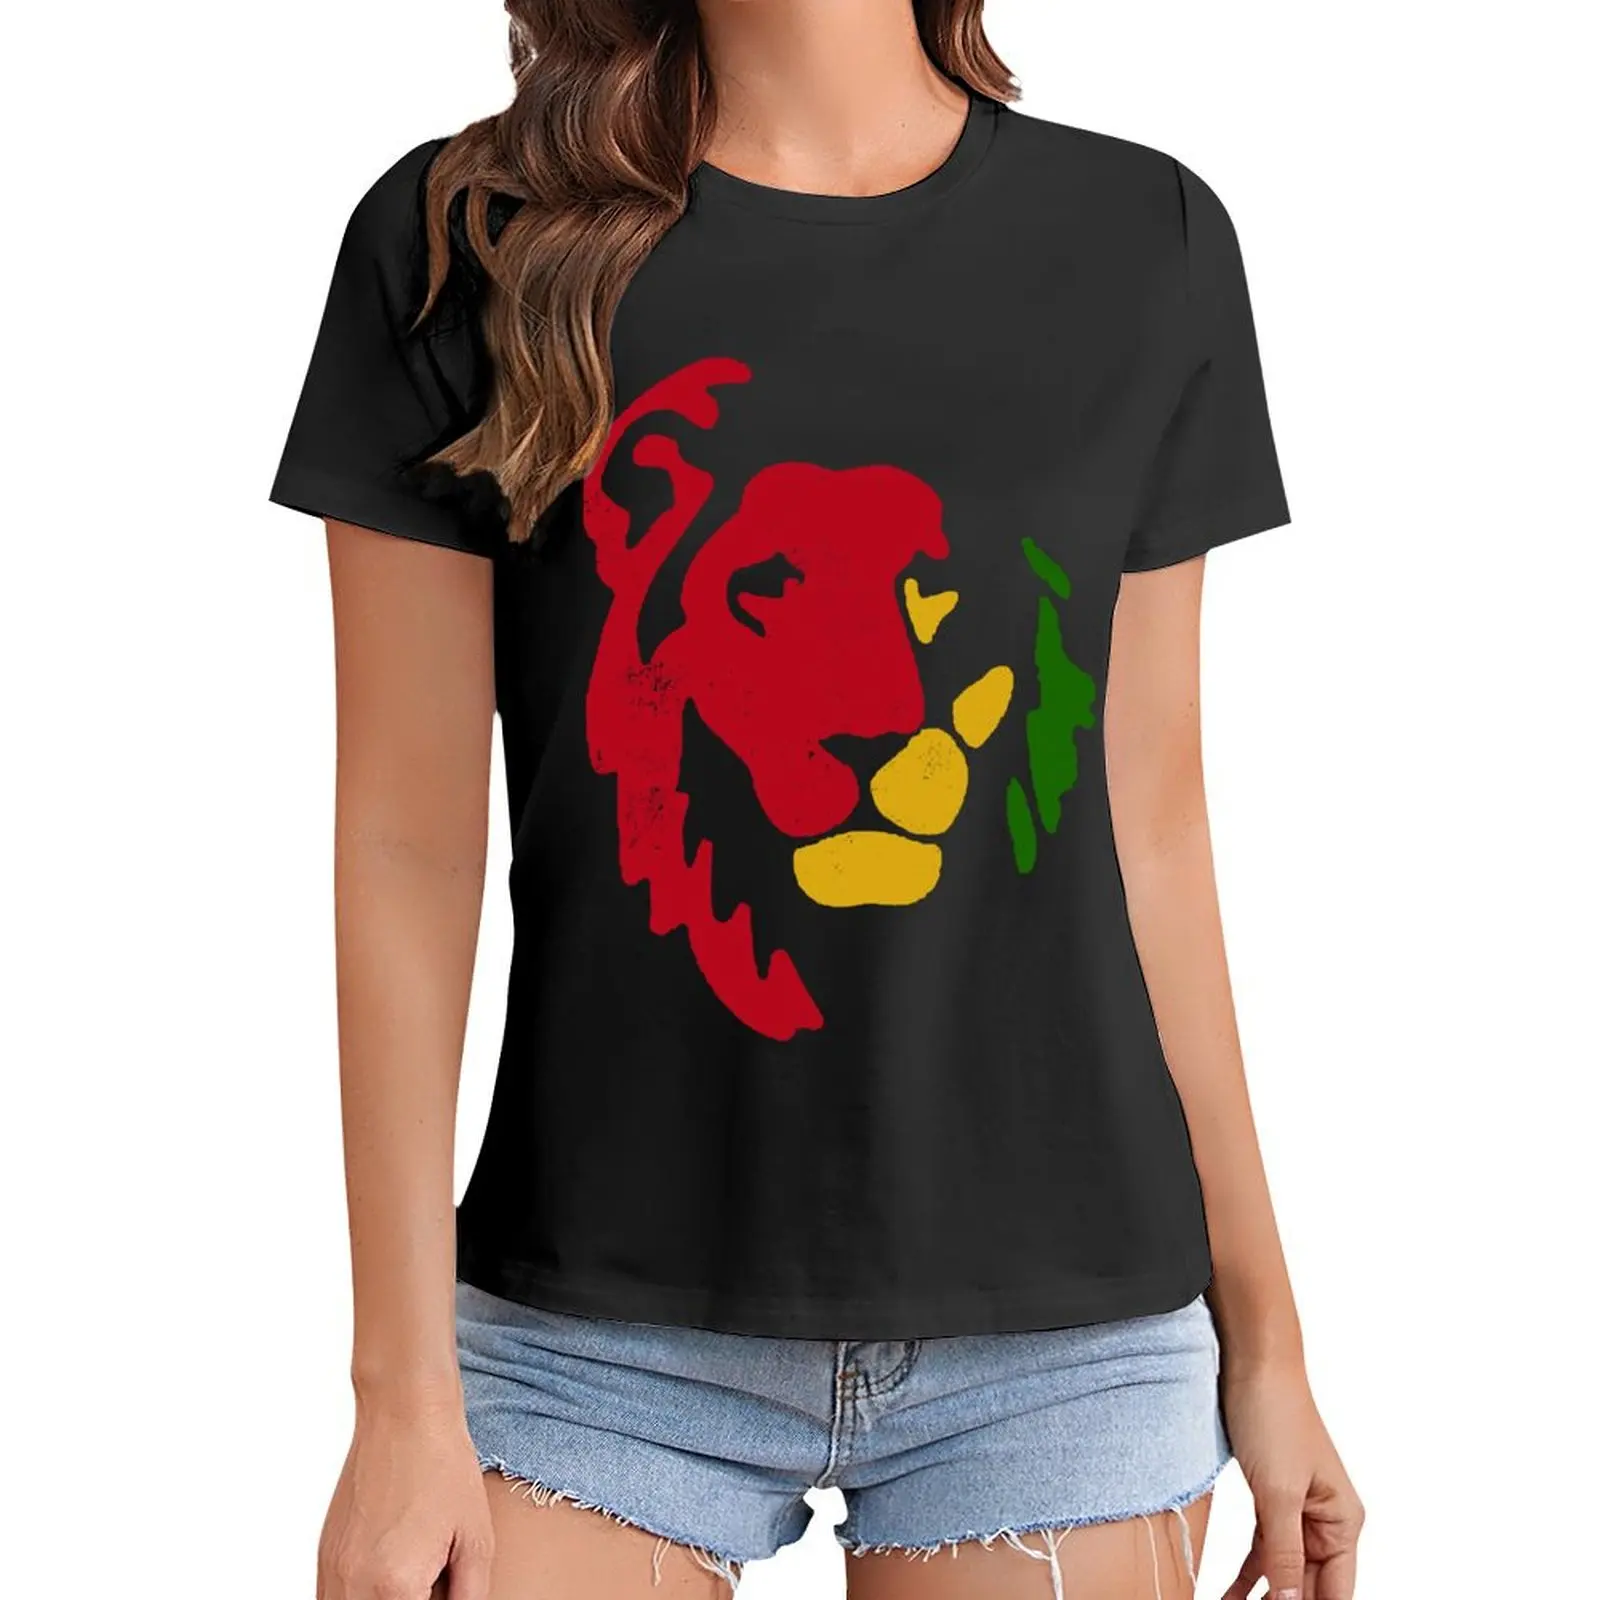 

Lion Rasta Reggae T-Shirt Blouse sports fans Short sleeve tee heavyweights Women tops